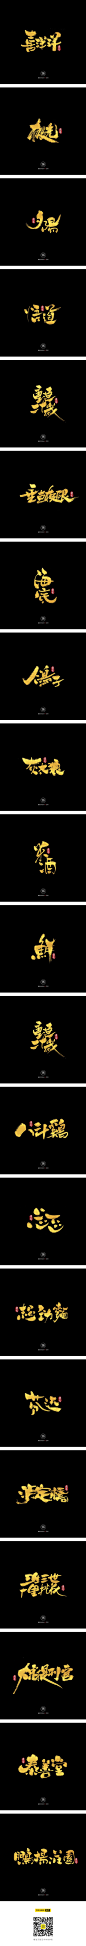 12.05一组手写字-字体传奇网-中国首个字体品牌设计师交流网